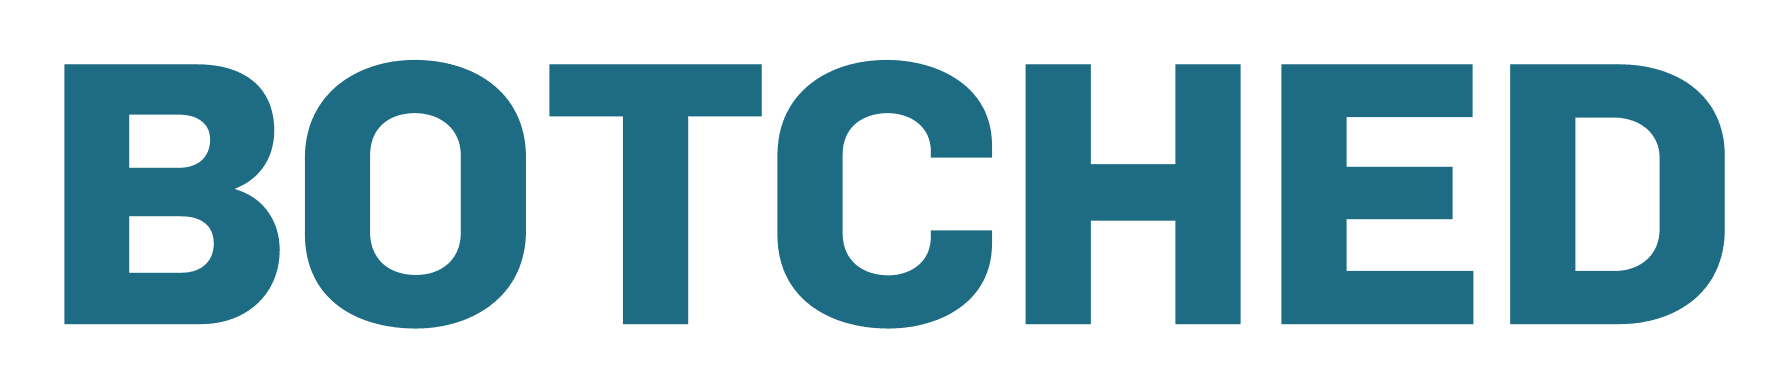 Botched logo